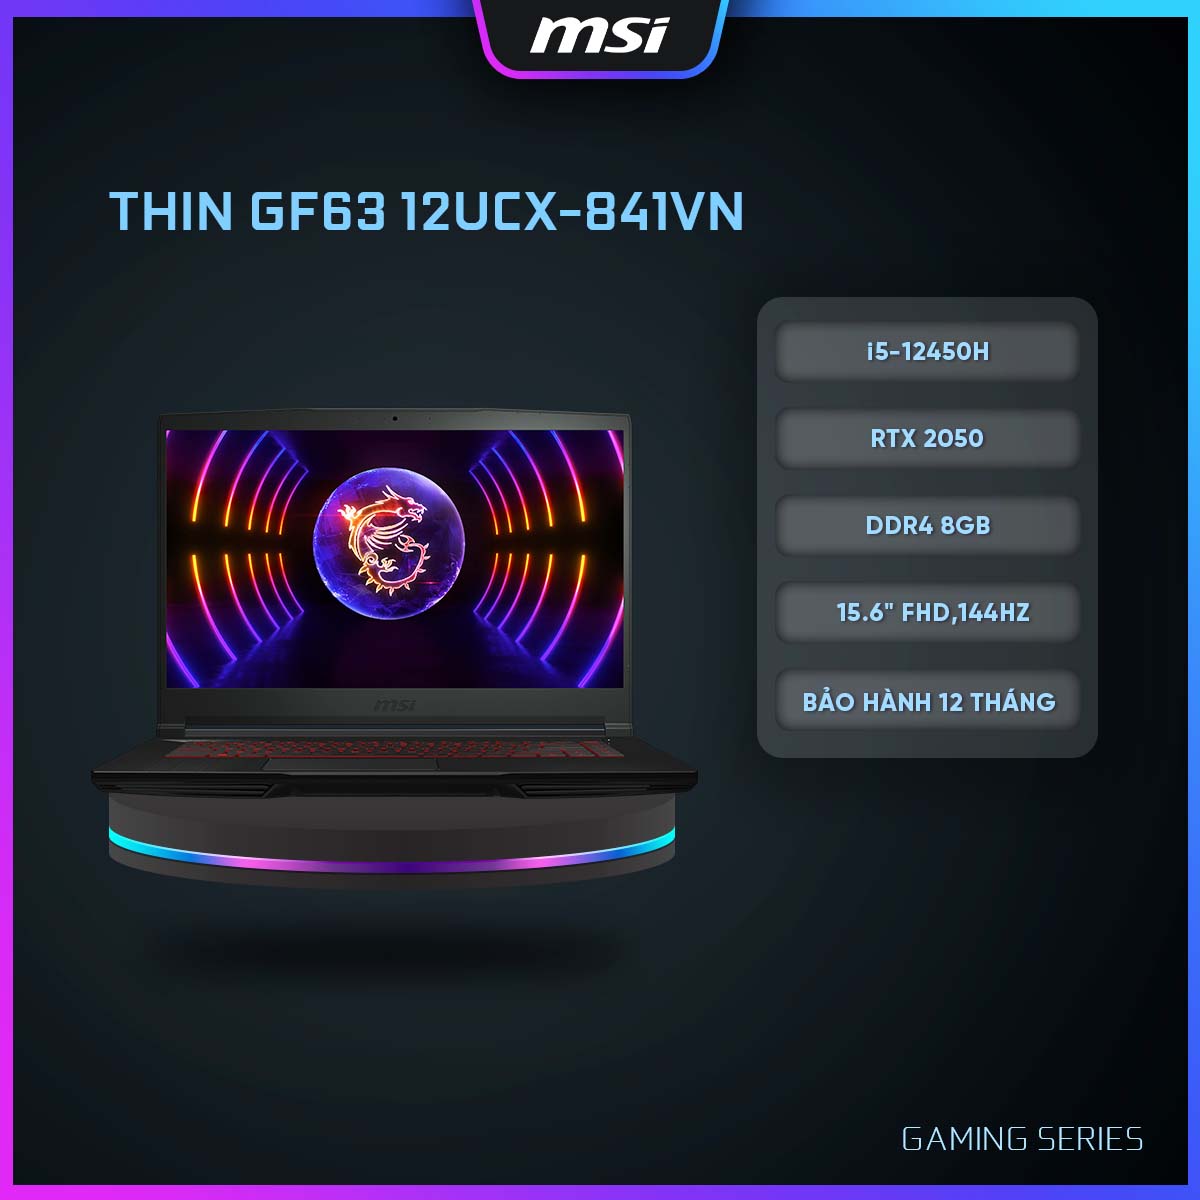 MSI Laptop Gaming Thin GF63 12UCX-841VN|i5-12450H|RTX 2050|DDR4 8GB|512GB SSD|15.6" FHD, 144Hz [Hàng chính hãng]